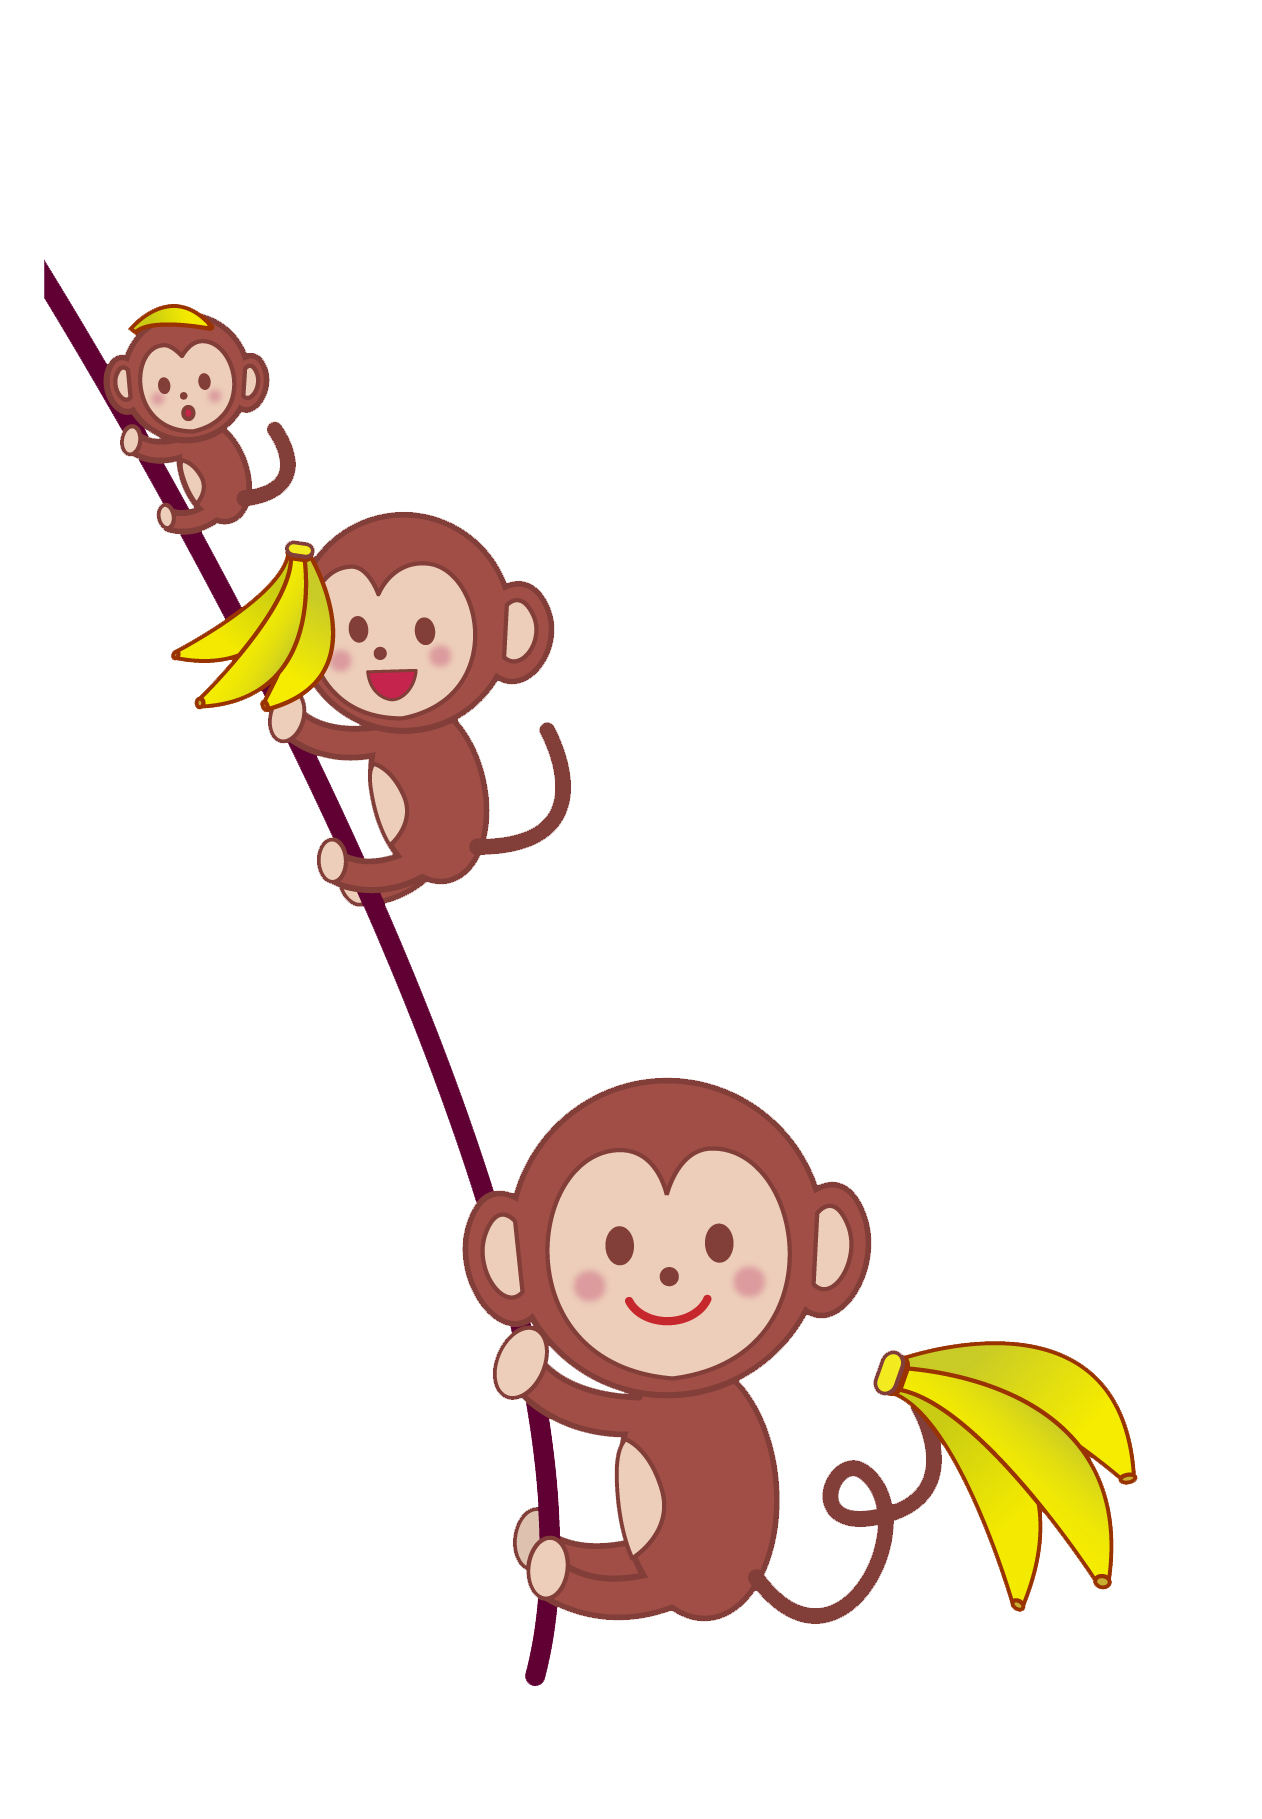 バナナを持って登る猿たちのイラスト Bizocean ビズオーシャン